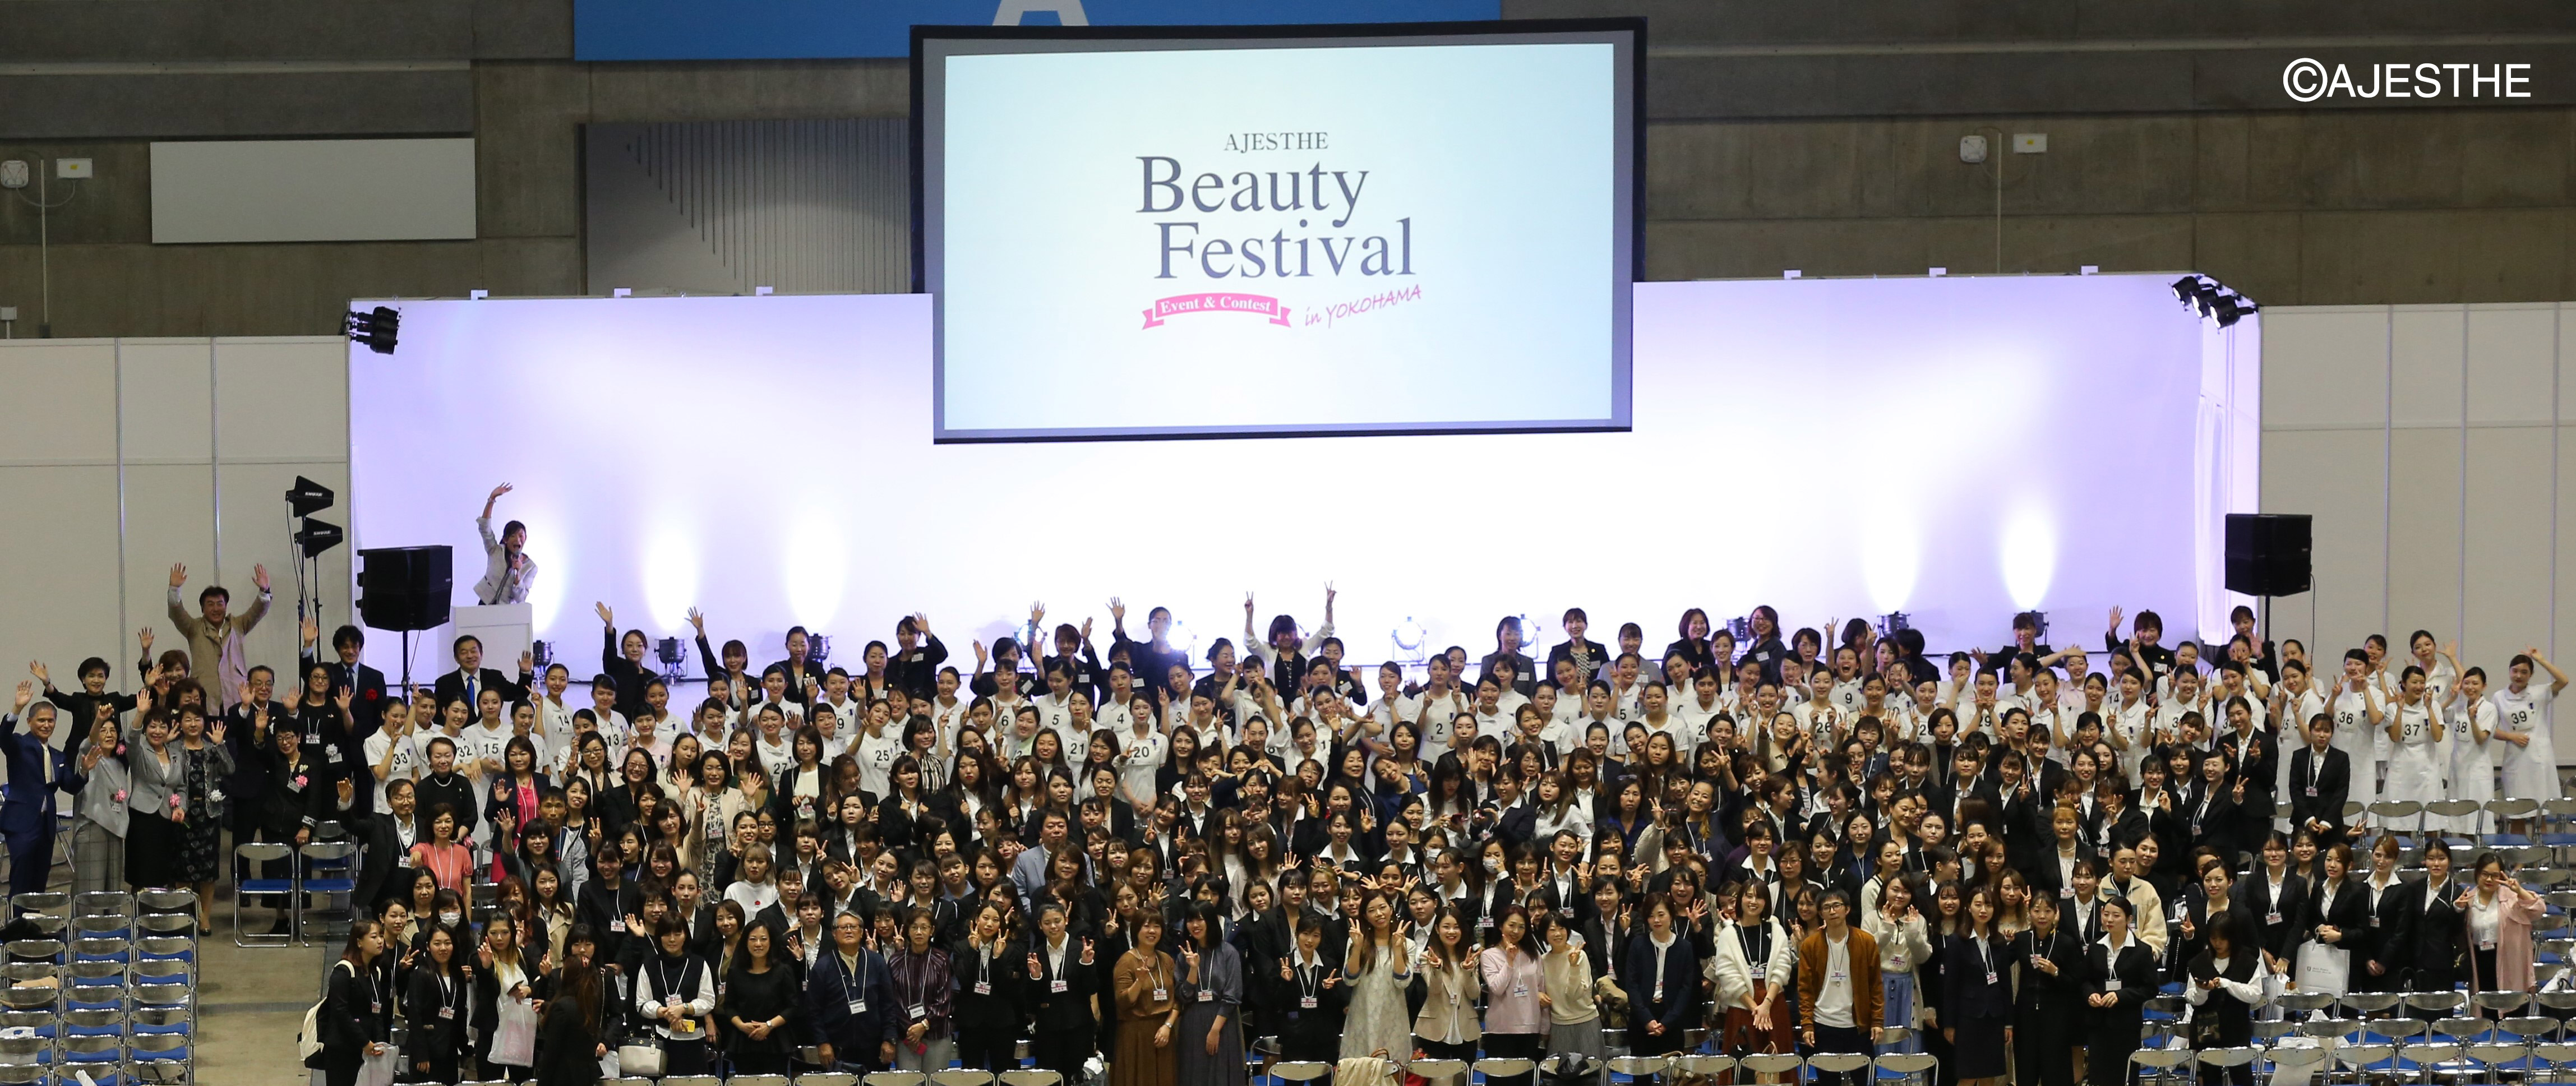 エステティックの魅力を啓発する美の祭典 「AJESTHE Beauty Festival in YOKOHAMA」初開催！